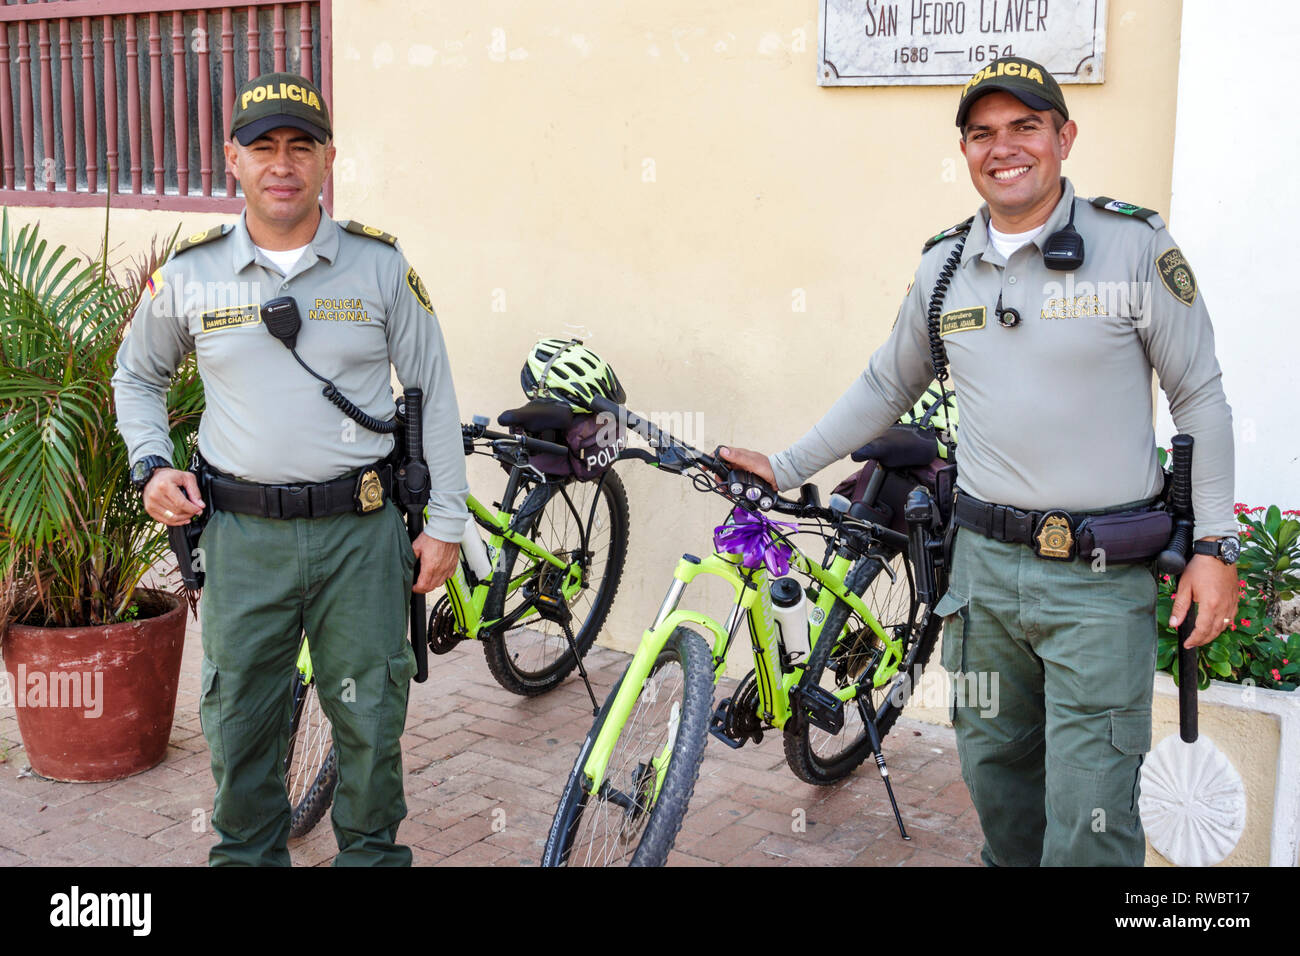 Cartagena Colombia,Plaza San Pedro Claver,residenti ispanici,polizia nazionale,polizia,ufficiale,uniforme,forze dell'ordine,uomo maschio,bici bic Foto Stock